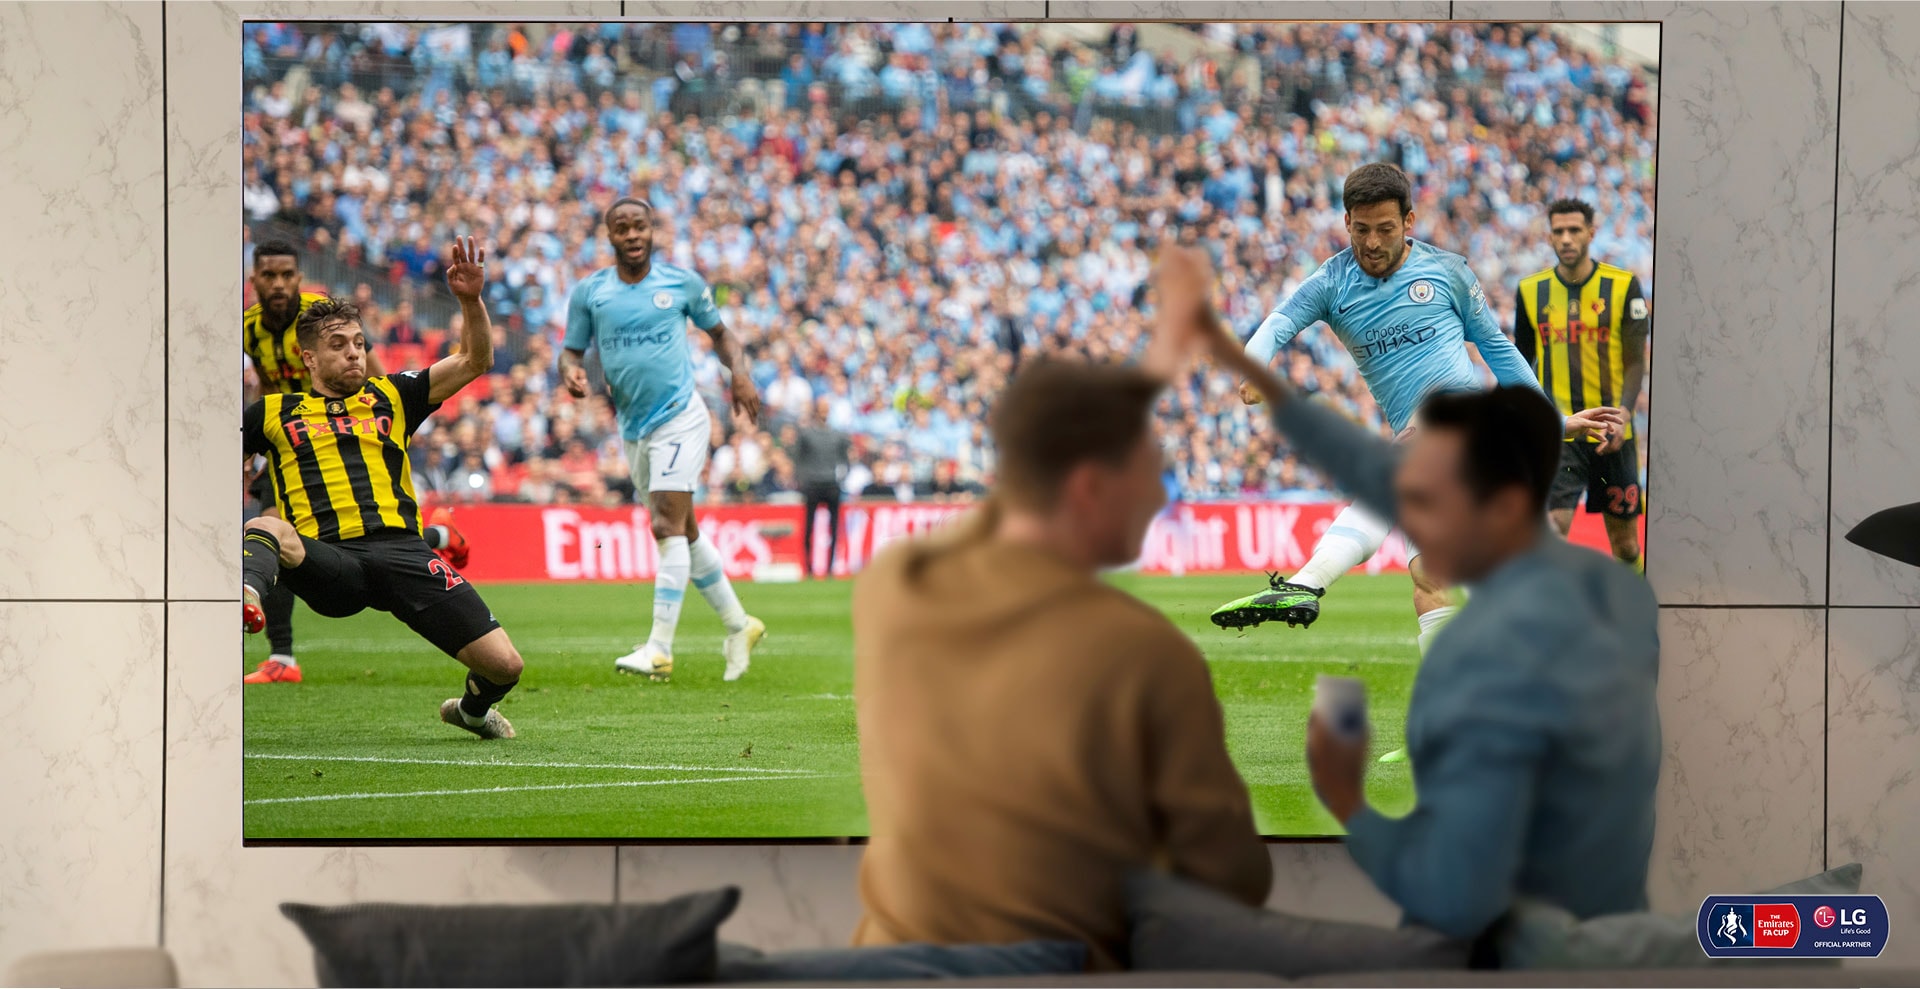 Dos hombres vitorean, mientras miran un partido de fútbol en un televisor Nanocell en la sala de estar.